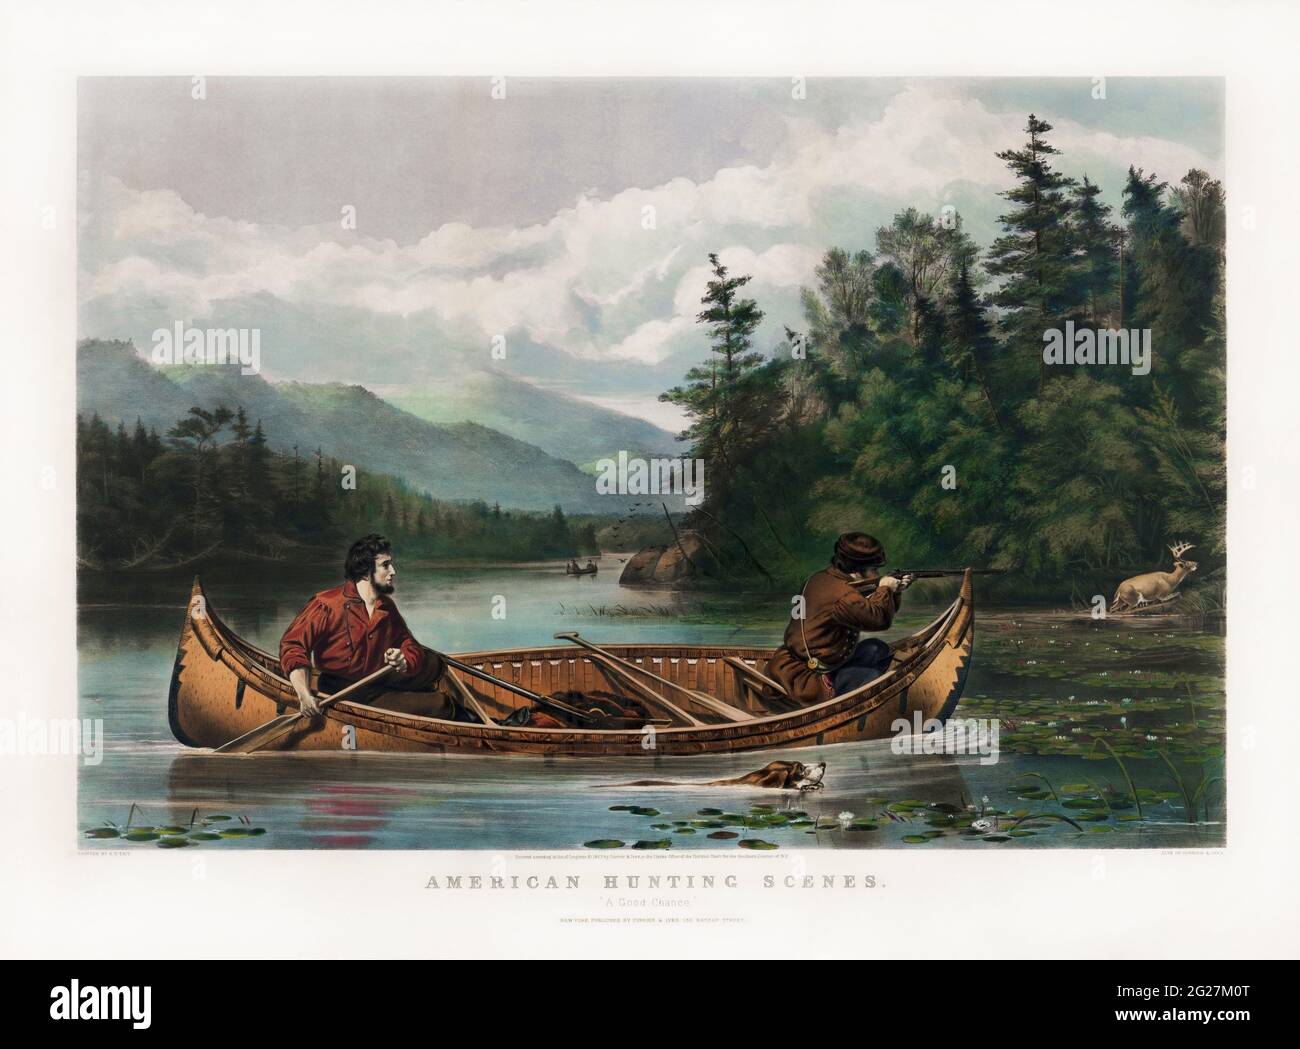 Dos cazadores en canoa, uno remando y el otro disparando su rifle a un alce en la orilla. Foto de stock